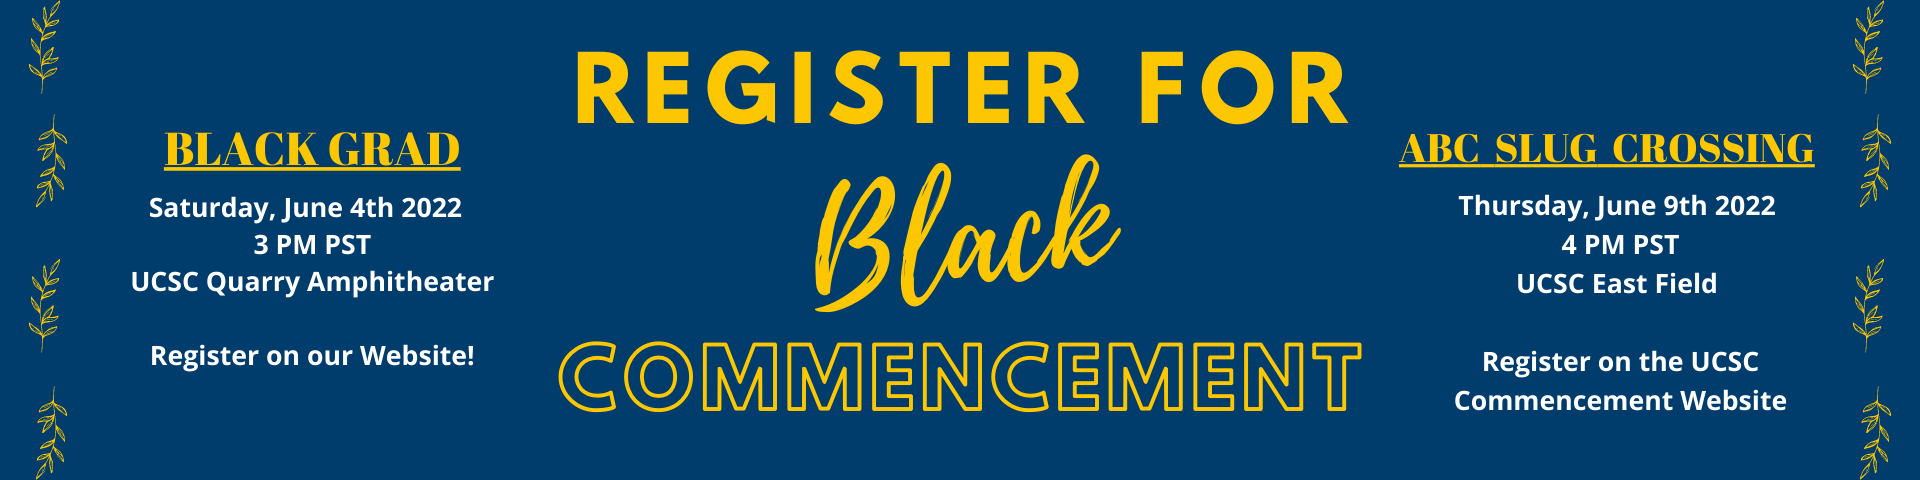 Black Grad Registration